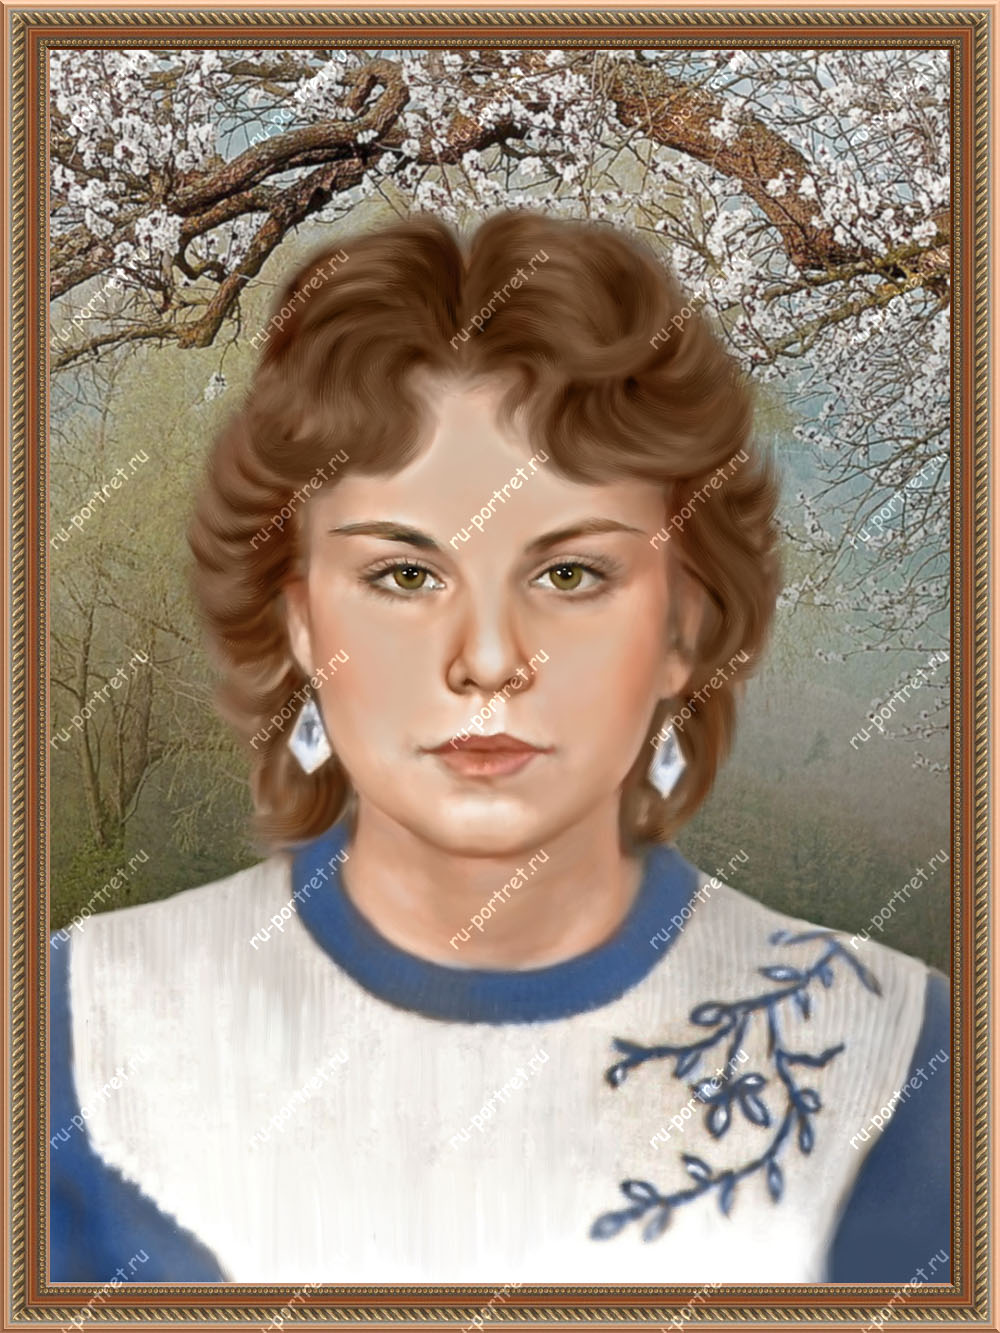 Нарисовать портрет на заказ от компании Ru-portret.ru Авторская работа. Музейное качество. Звони 89646434155 (WhatsApp & Viber).